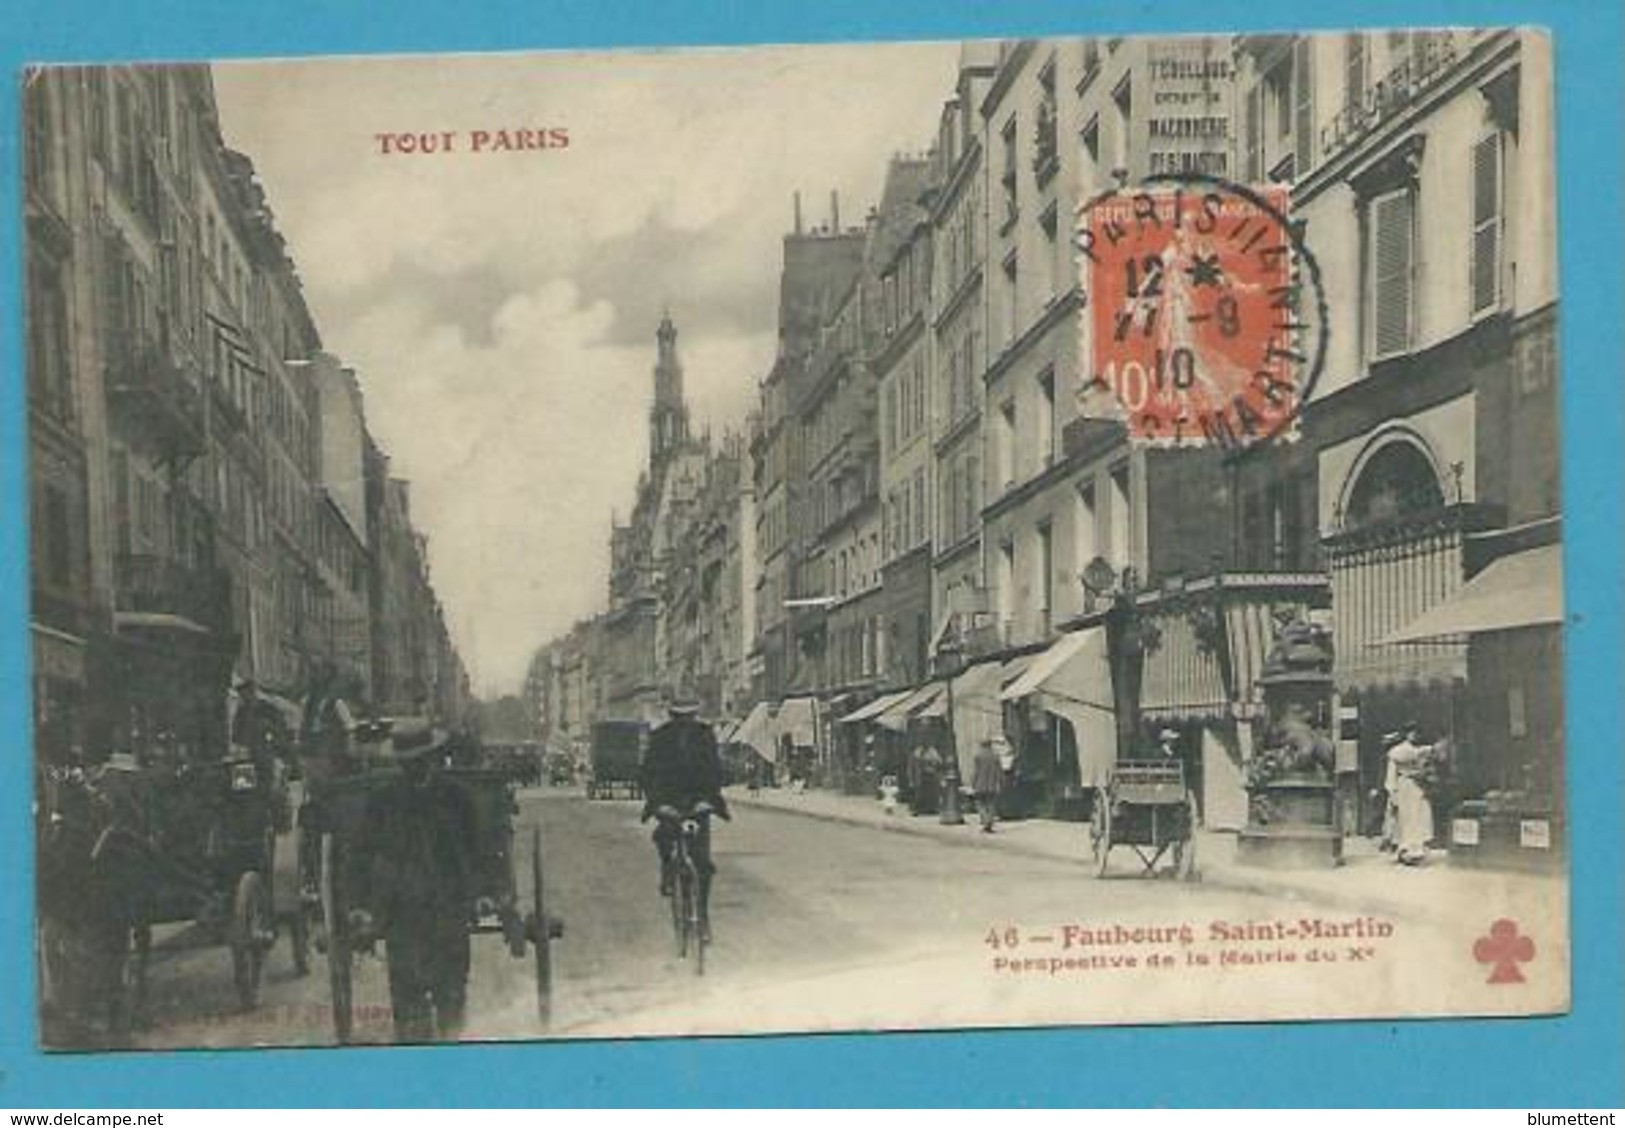 CPA TOUT PARIS 46 - Faubourg Saint-Martin Perspective De La Mairie Du Xème (Xème) Edition FLEURY - Paris (10)